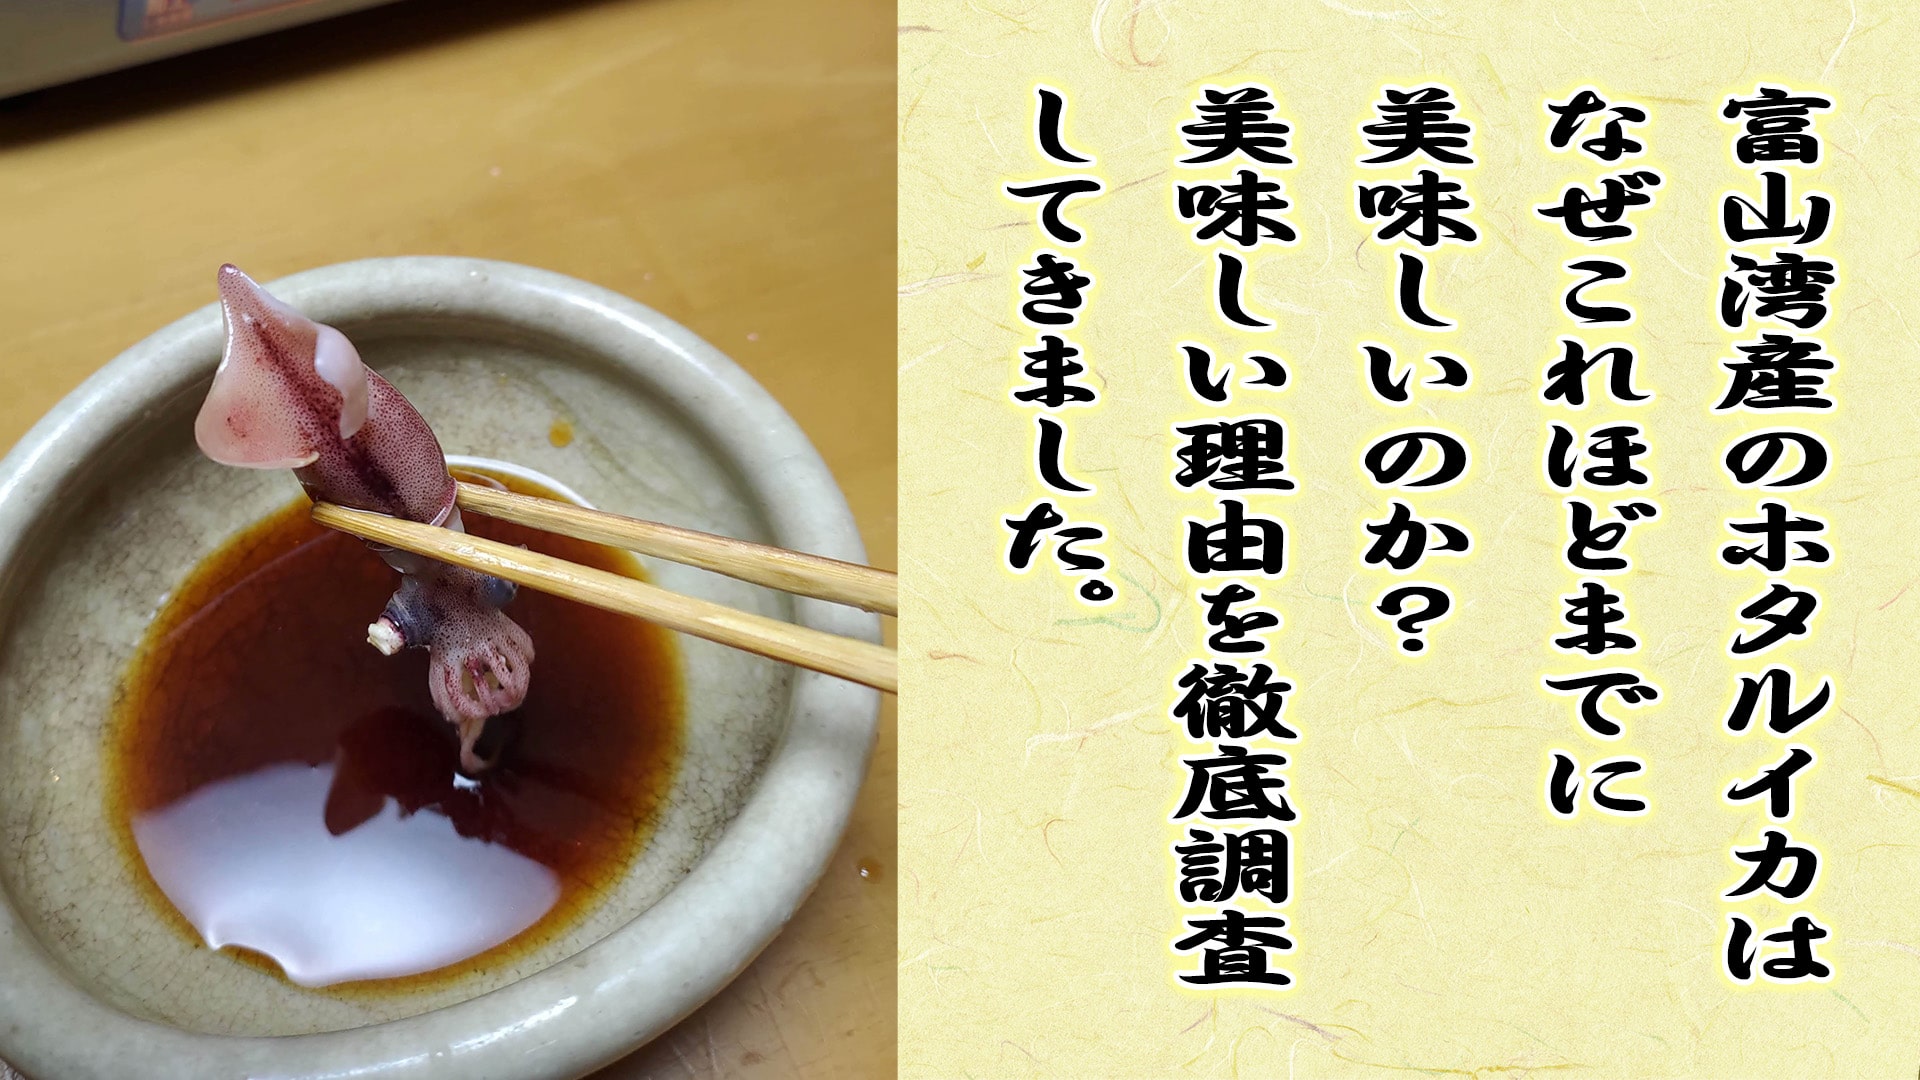 富山湾産のホタルイカはなぜこれほどまでに美味しいのか？美味しい理由を徹底調査してきました。